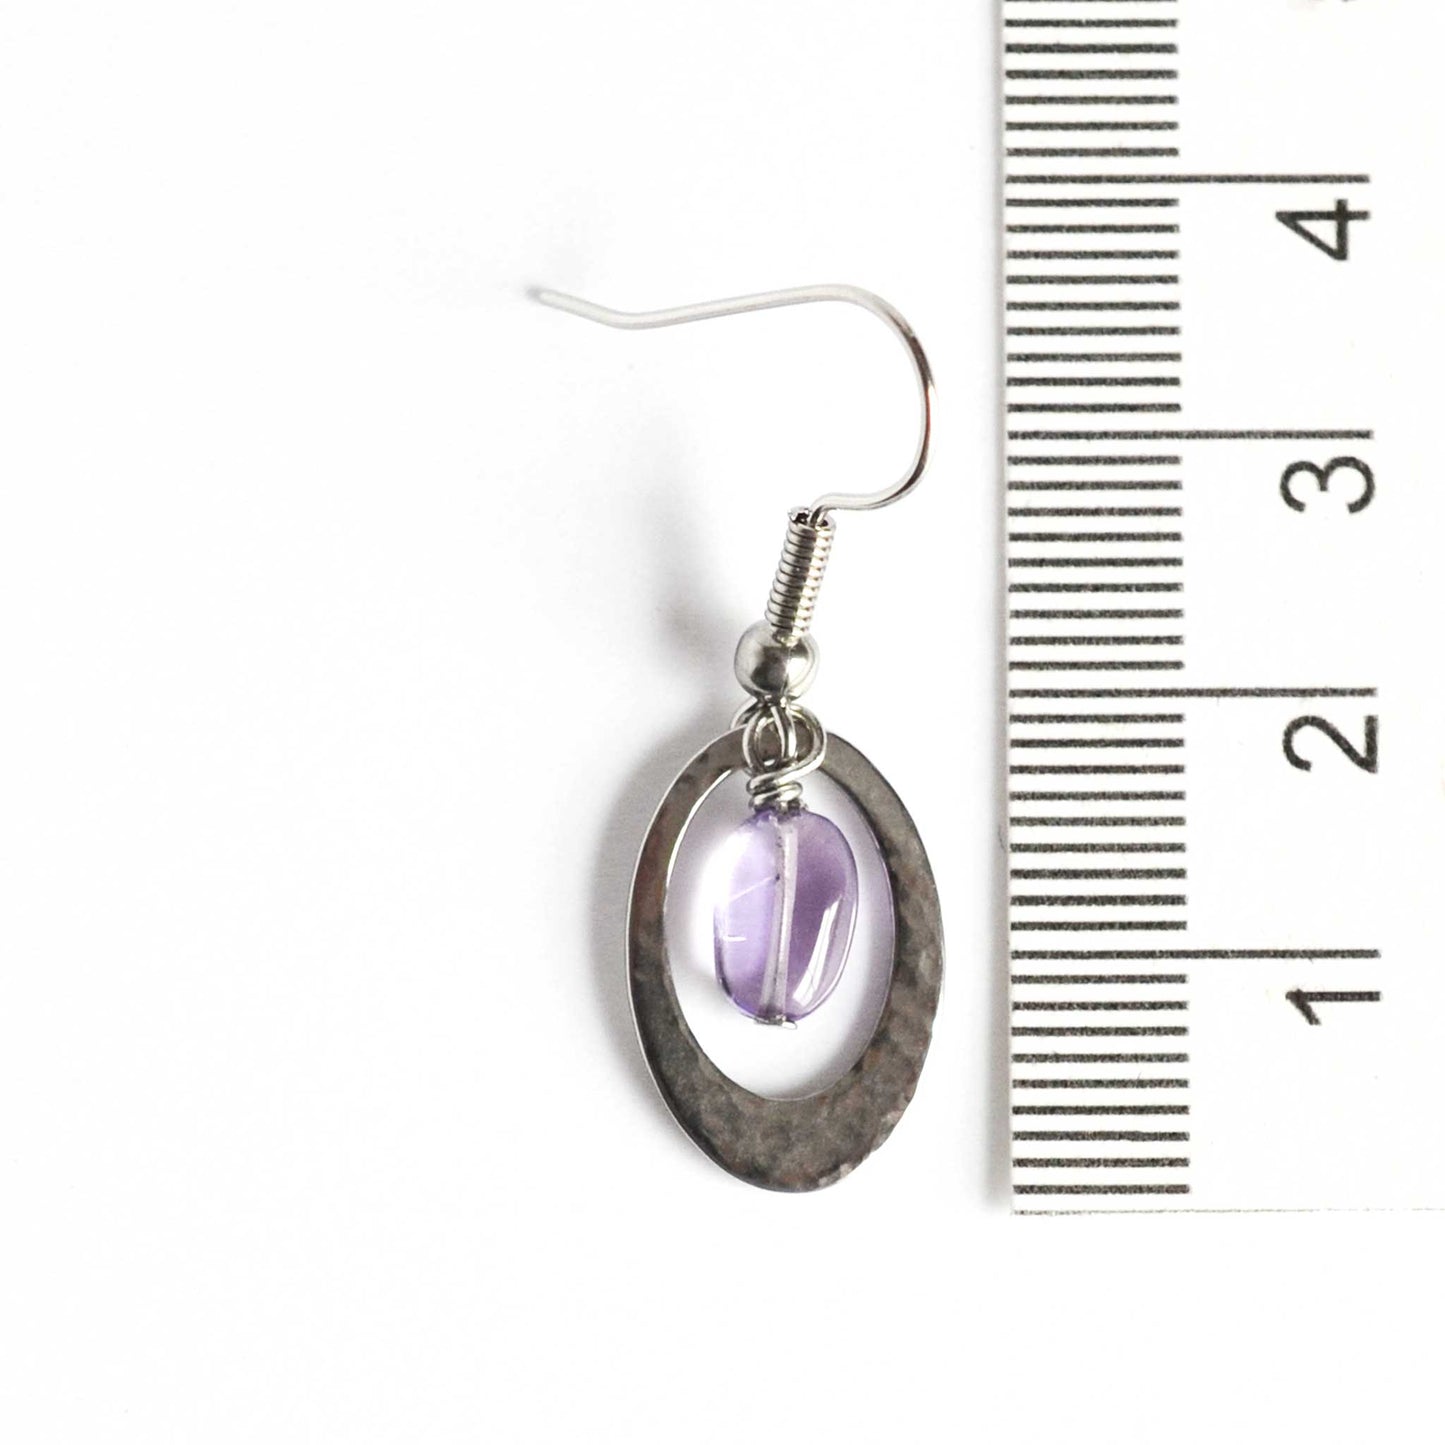 35mm long oval Amethyst drop earrings next to ruler.